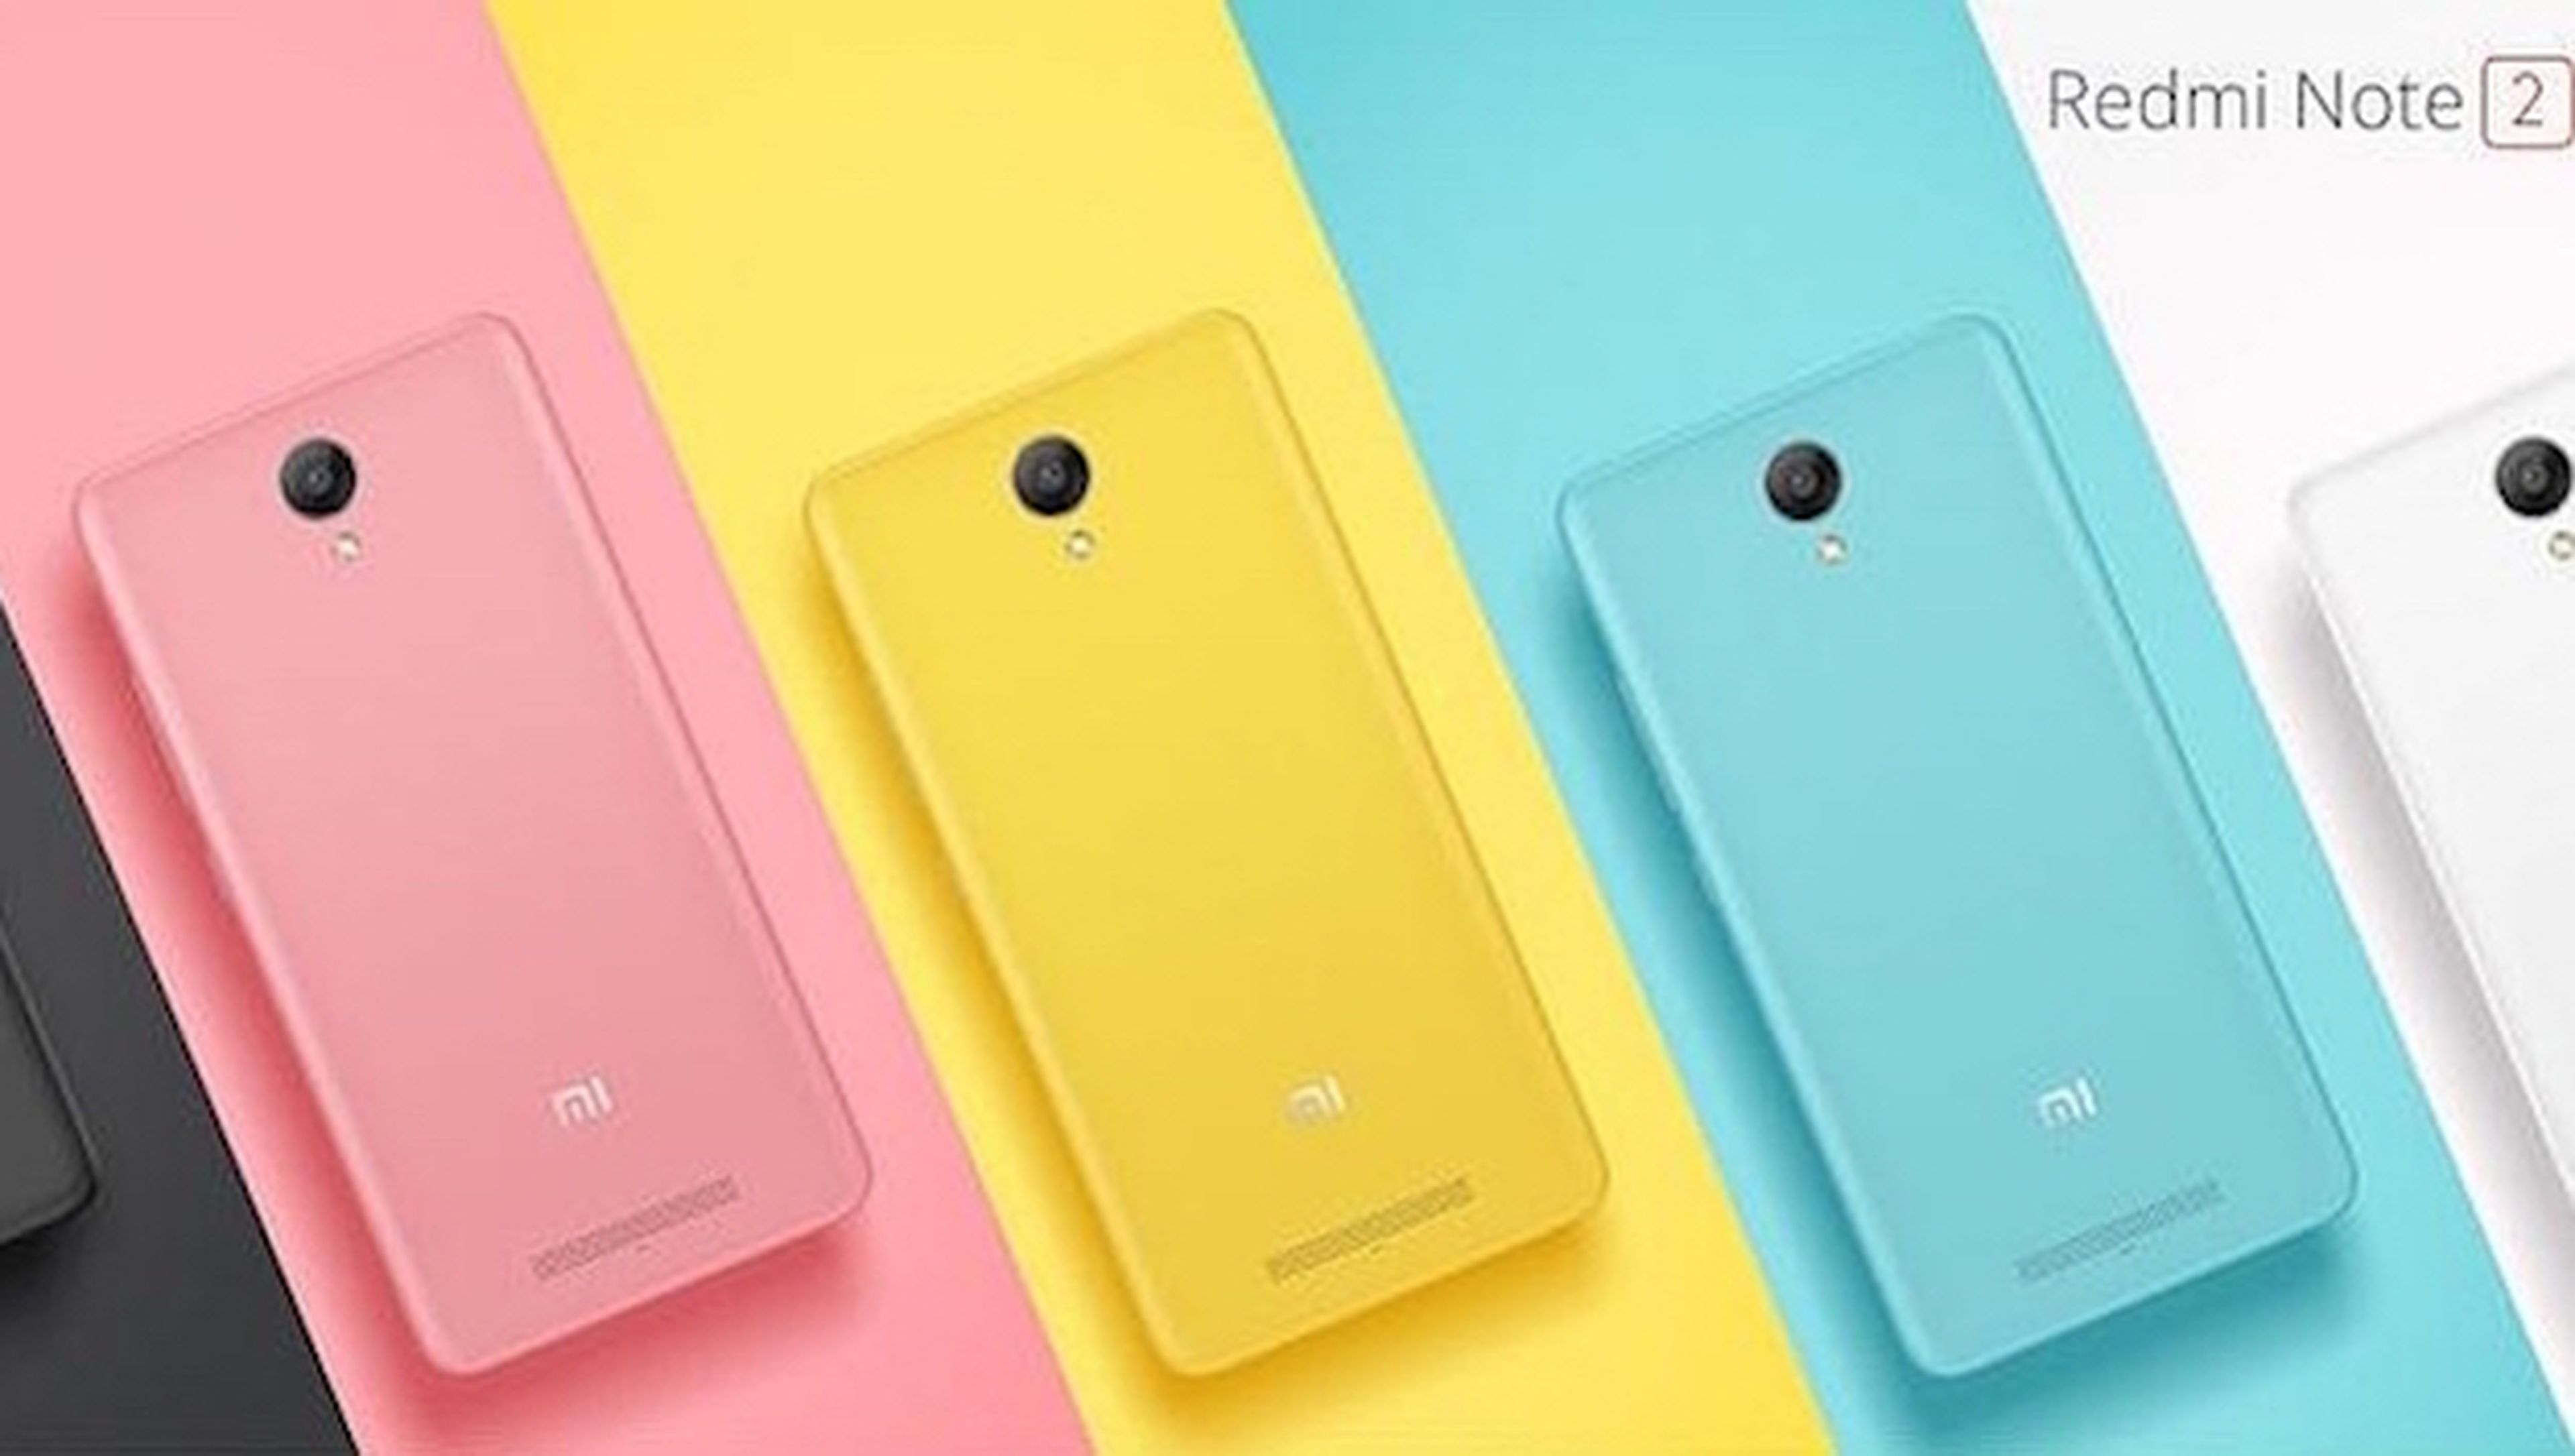 Ya puedes comprar el Xiaomi Redmi Note 2 al mejor precio